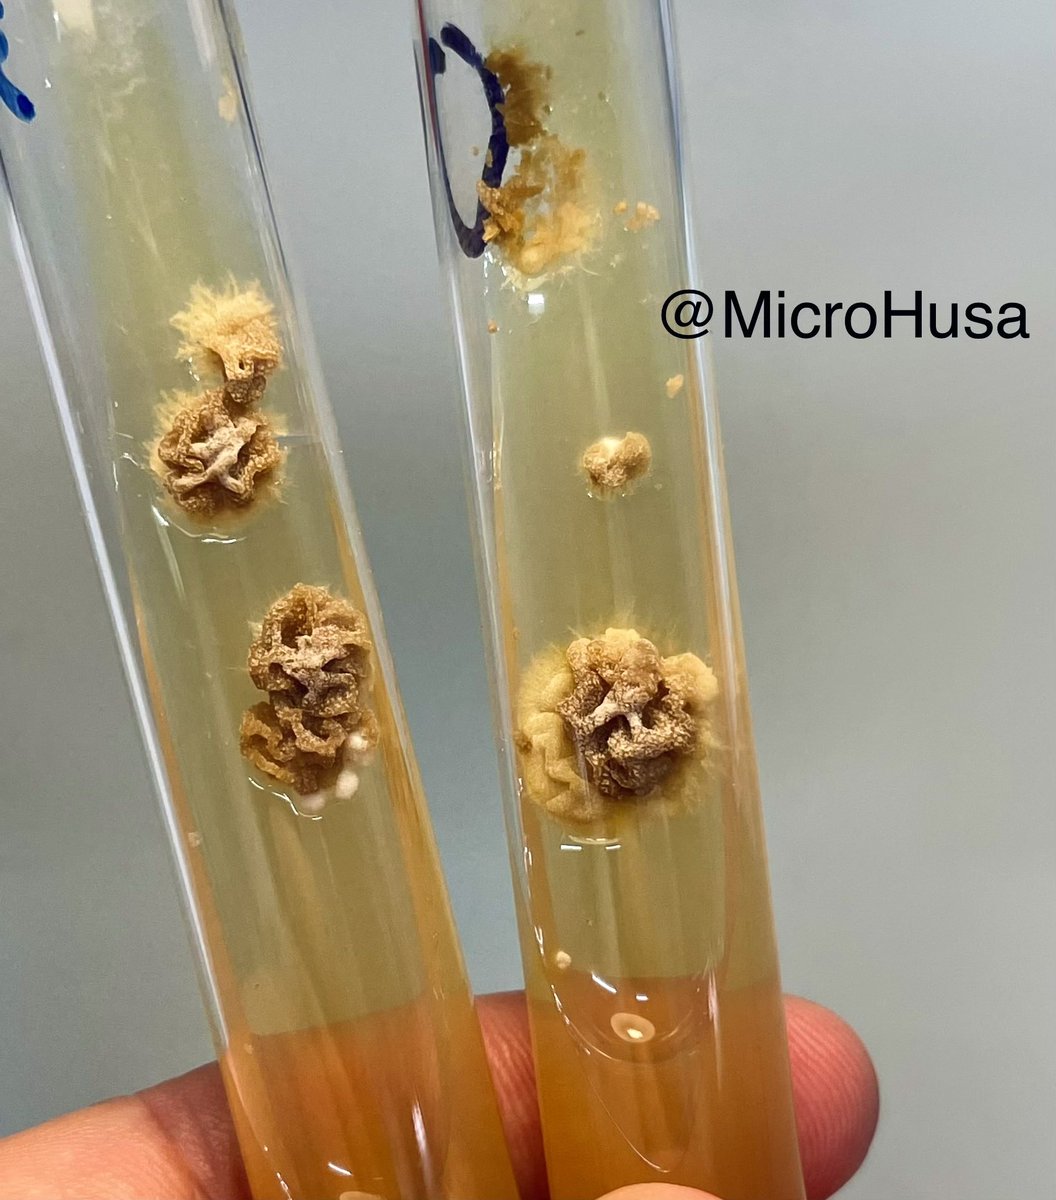 Epidermophyton floccosum en agar sabouraud dex. 🦠🧪

¡Se puede apreciar el aspecto de cerebro de la colonia! 🧠 

#FungiFriday #microbiology #FungalFriday #IDTwitter